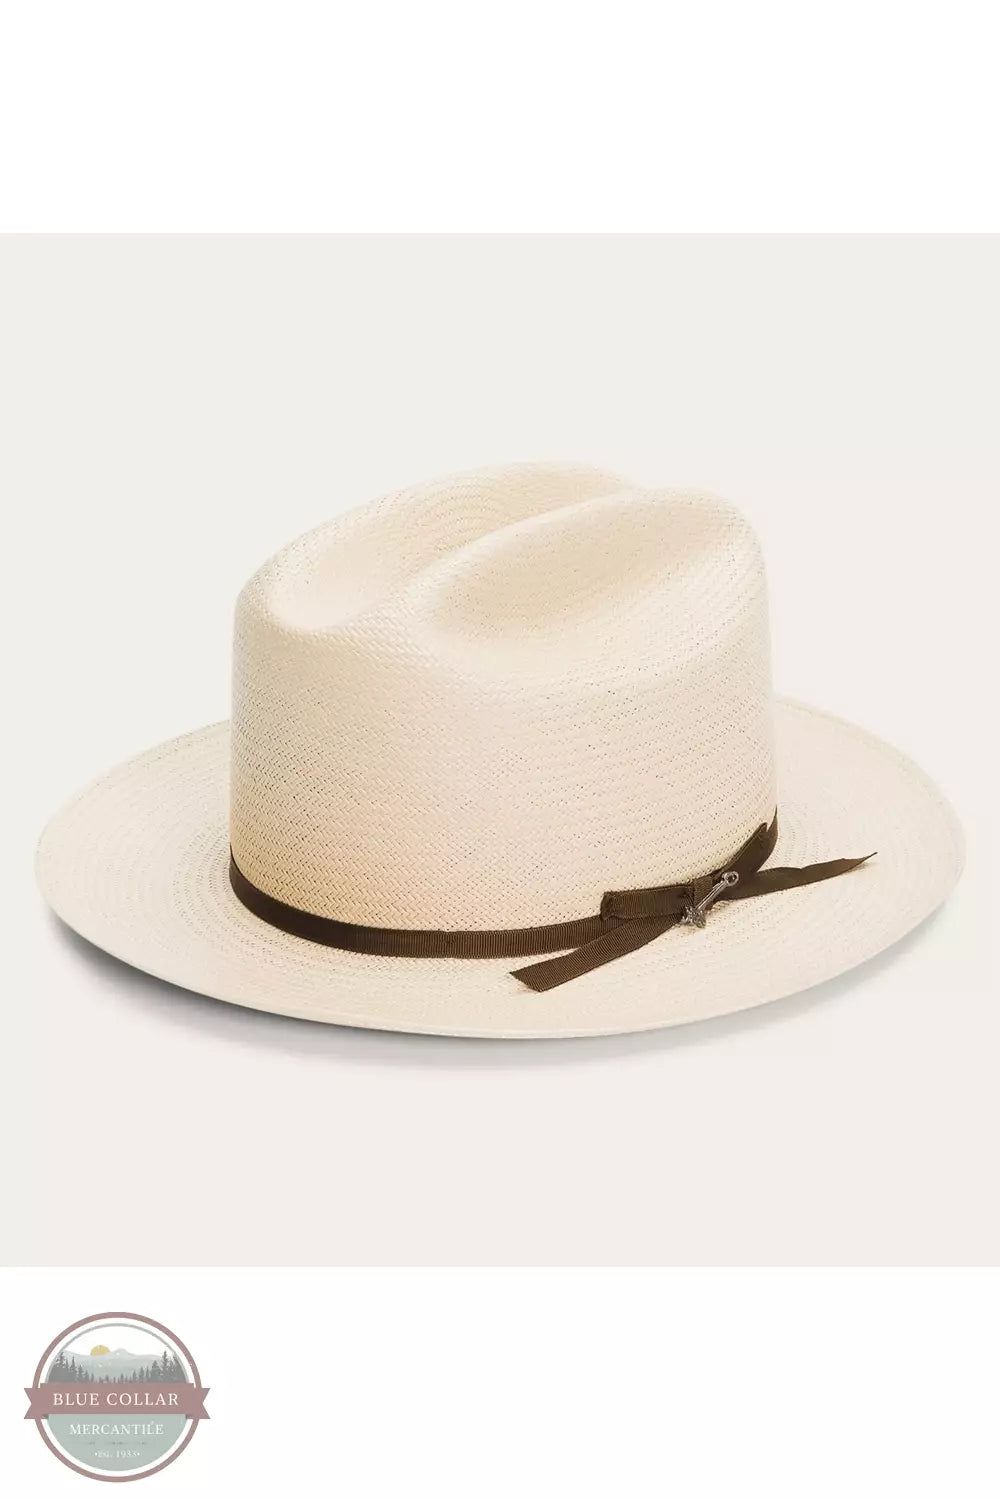 Open Road Western Straw Hat in Silver Belly by Stetson TSOPRDS0526-61-66